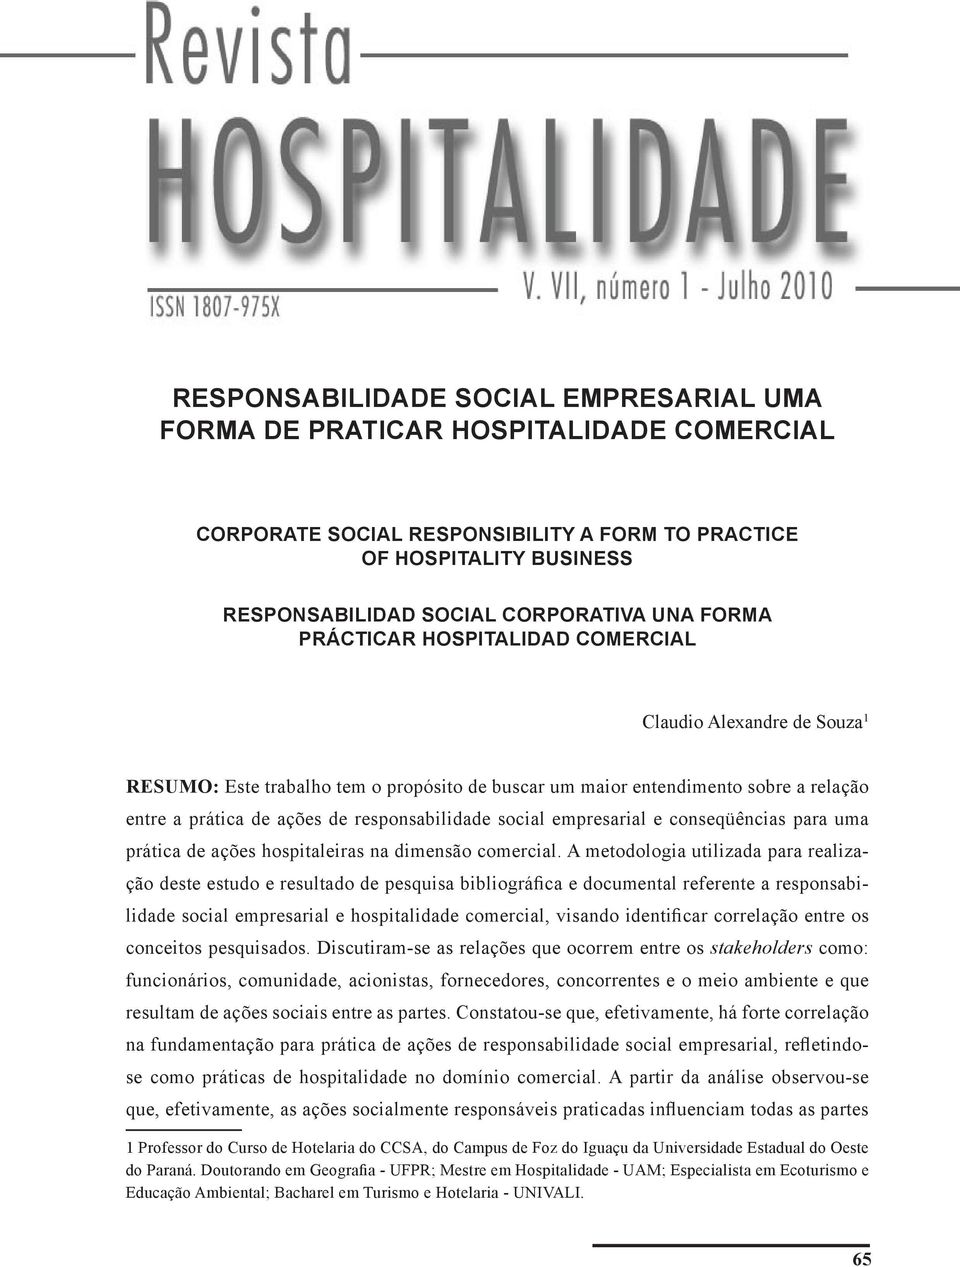 social empresarial e conseqüências para uma prática de ações hospitaleiras na dimensão comercial.